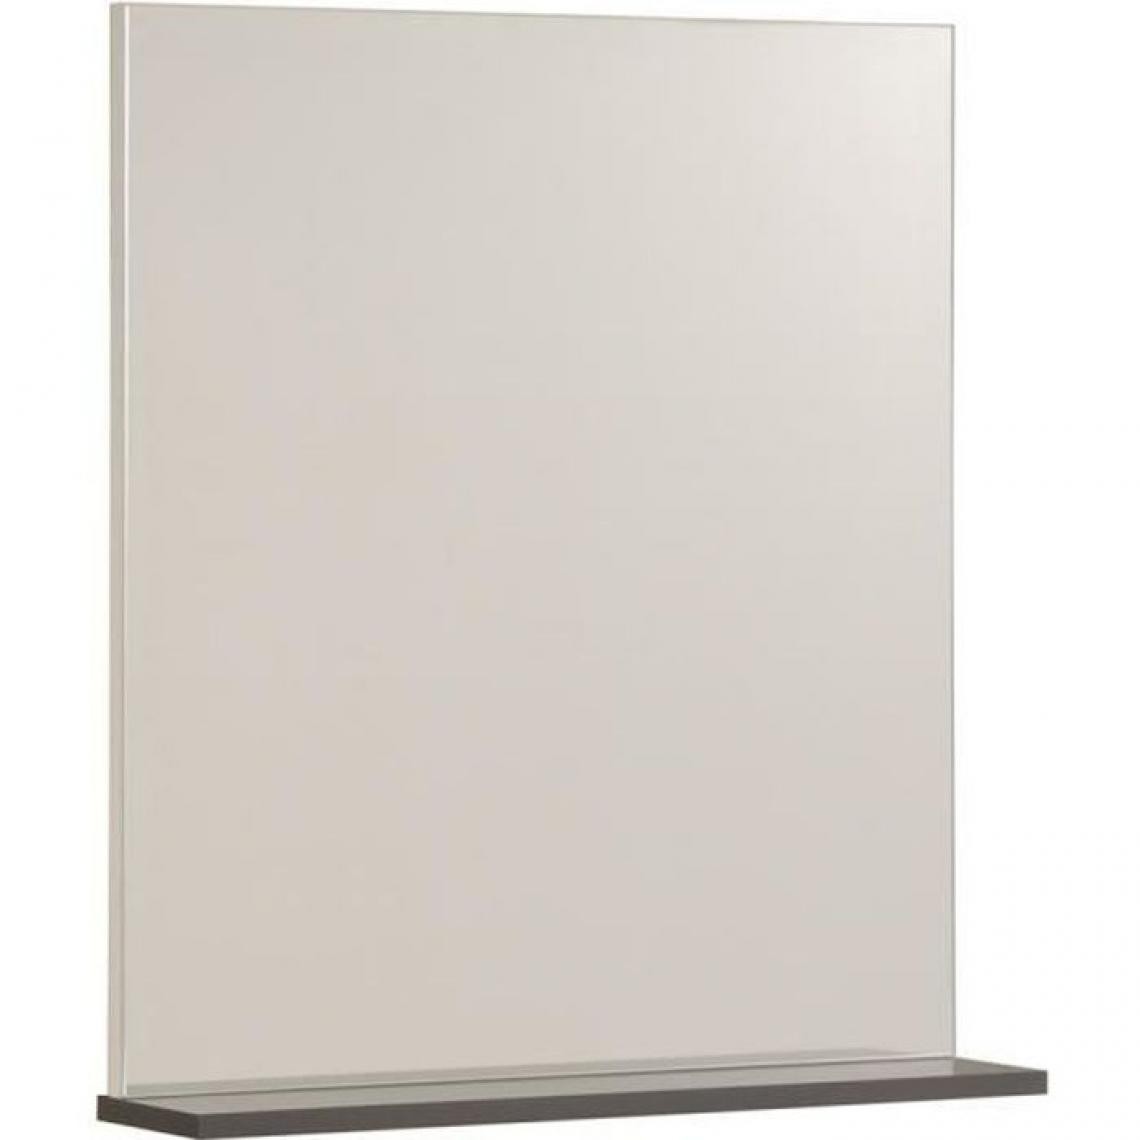 Ekipa - EKIPA Miroir avec tablette - Gris ombre et blanc - L 60 x P 14 x 70 cm - VERSA - Miroir de salle de bain